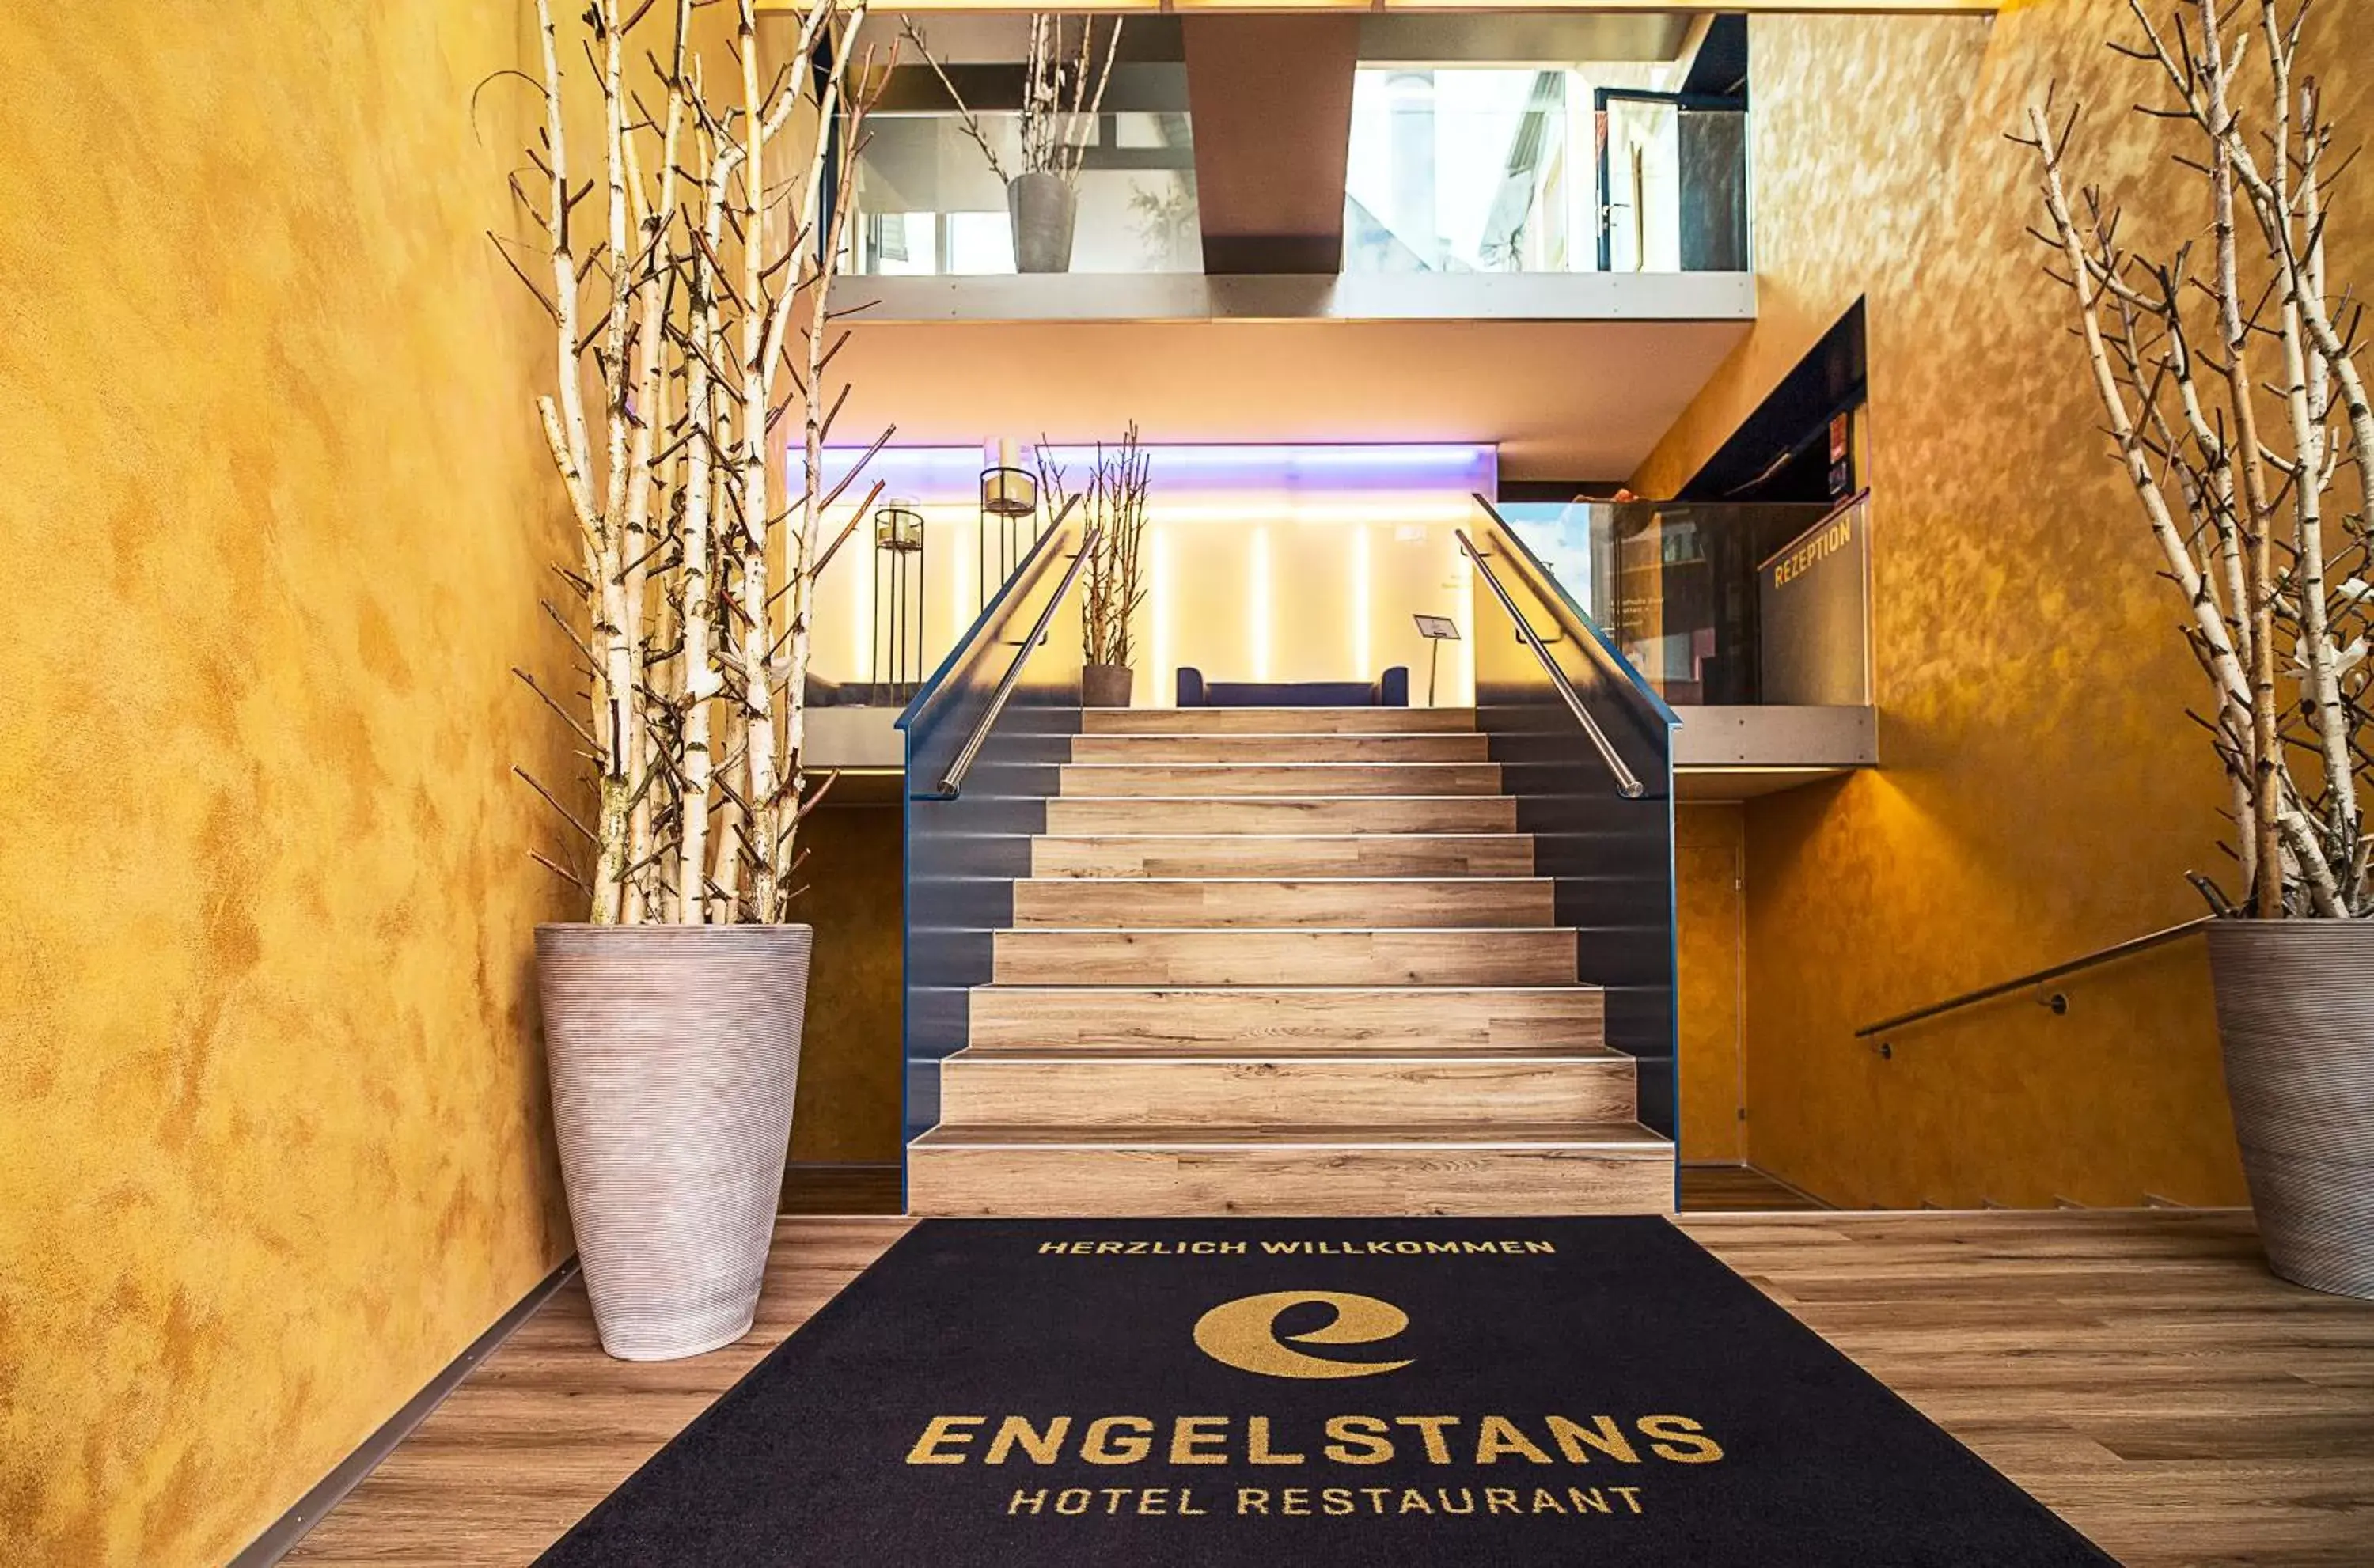 Lobby or reception in Hotel Engel